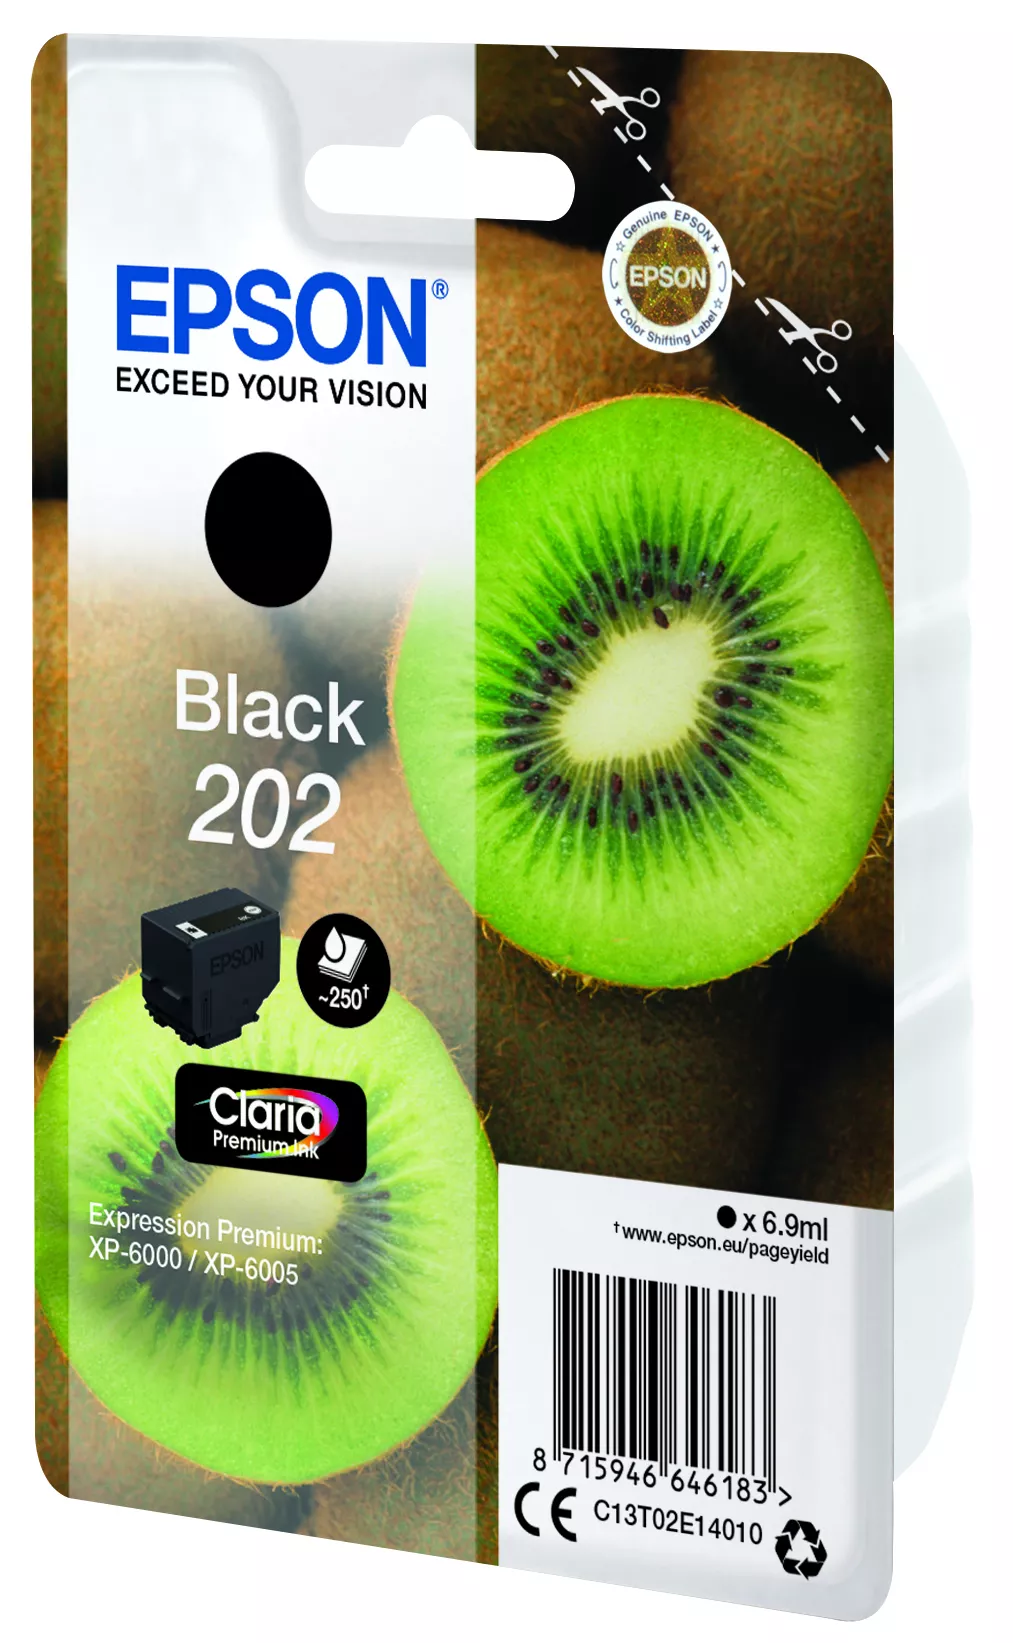 Achat EPSON 202 Black Ink Cartridge sec sur hello RSE - visuel 3